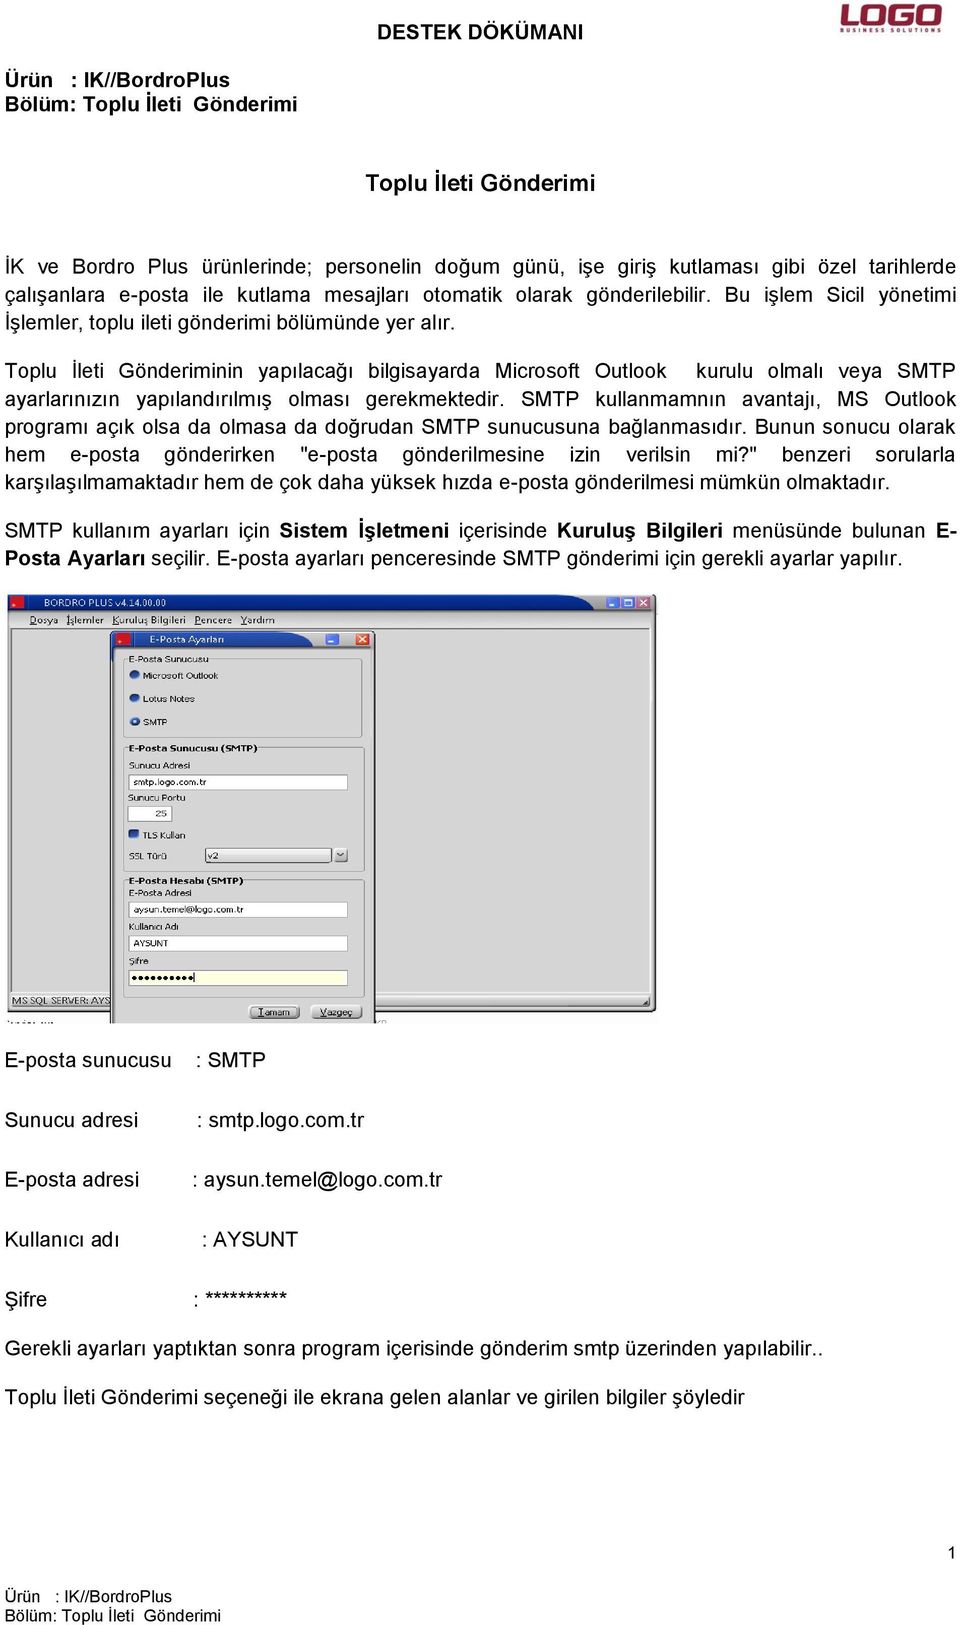 Toplu İleti Gönderiminin yapılacağı bilgisayarda Microsoft Outlook kurulu olmalı veya SMTP ayarlarınızın yapılandırılmış olması gerekmektedir.